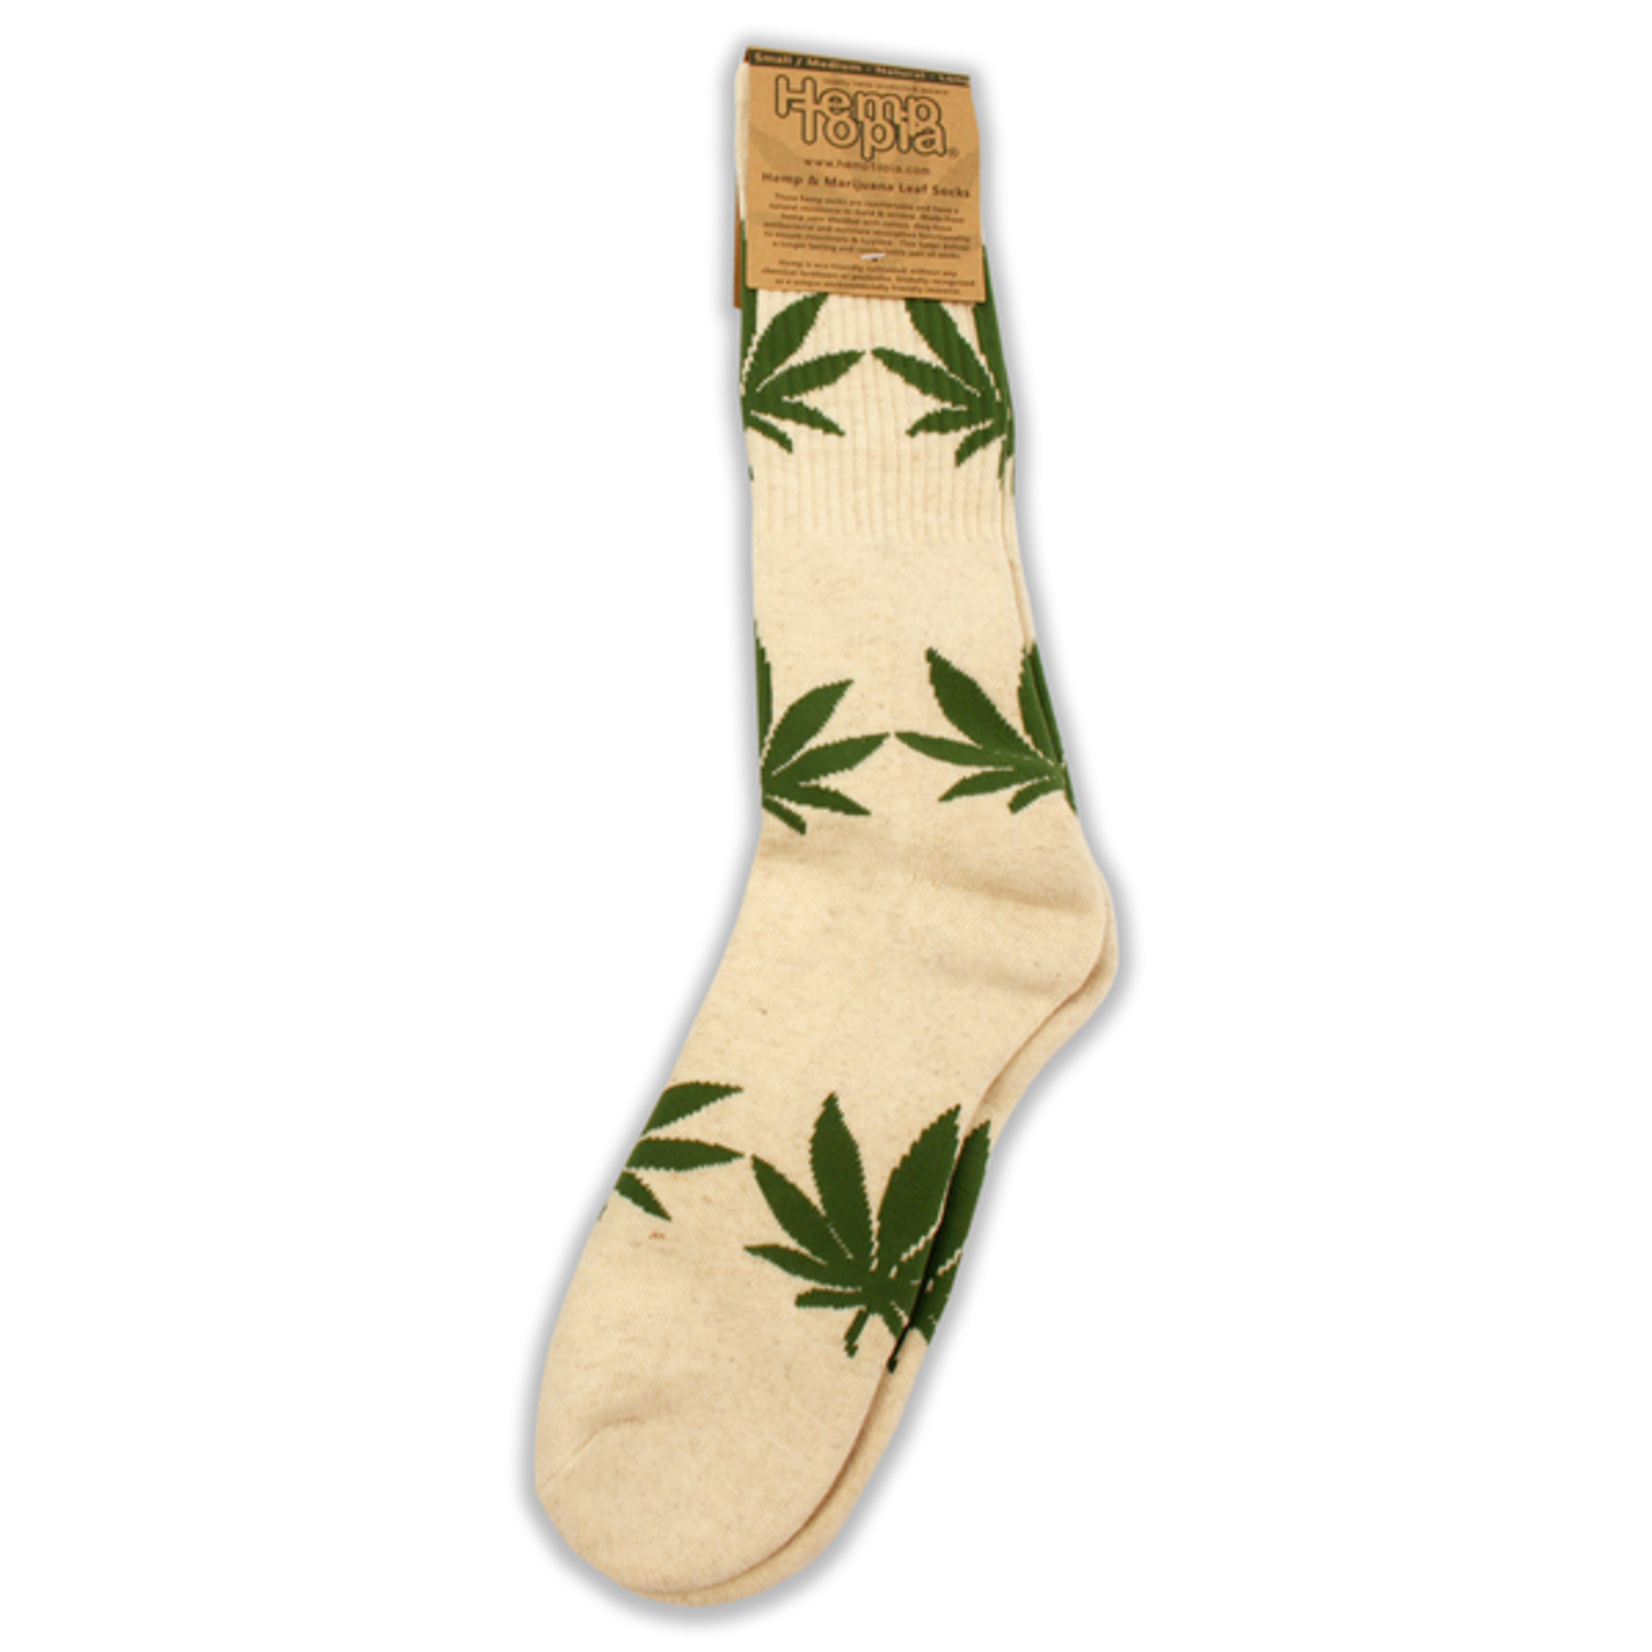 Hemptopia Hemp & Marijuana Leaf Socks